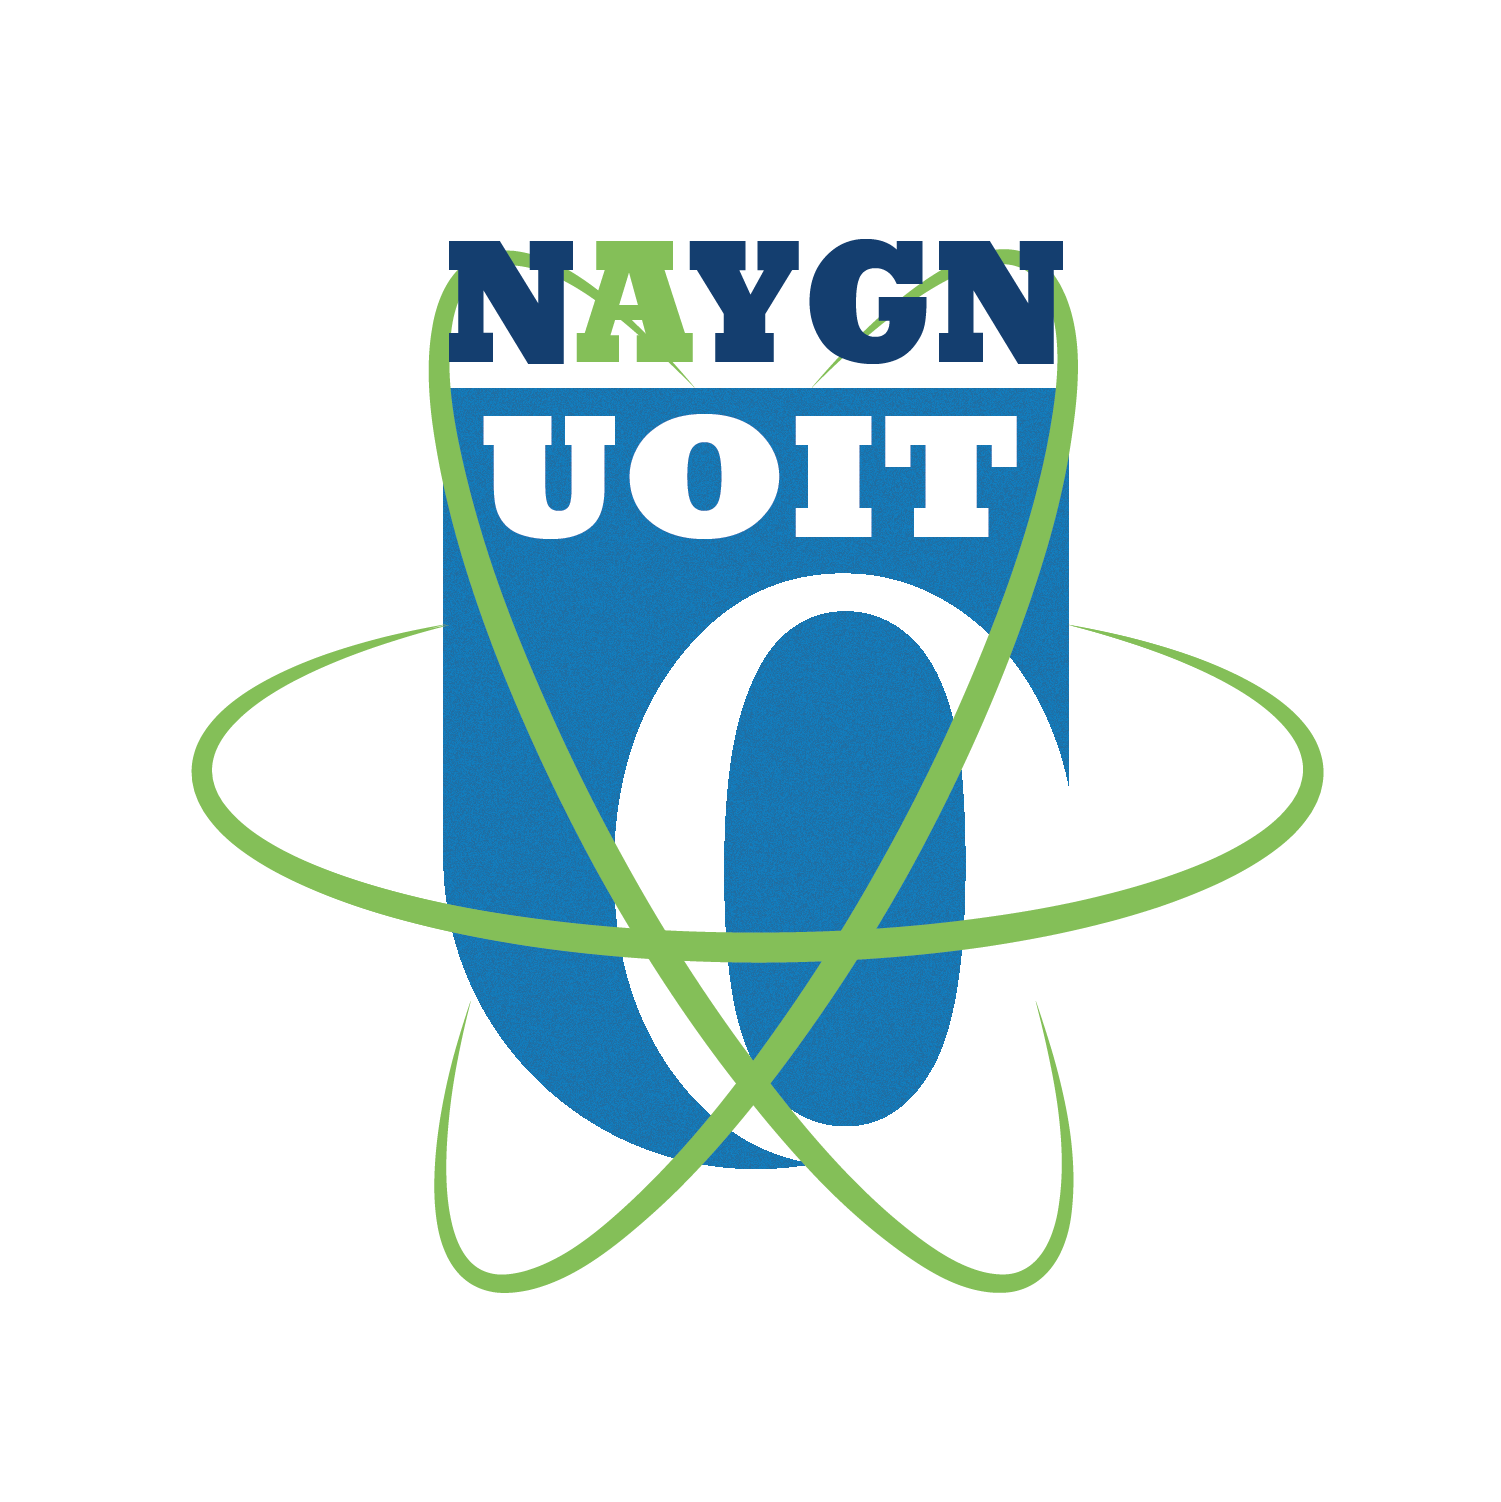 NAYGN-UOIT Logo Project